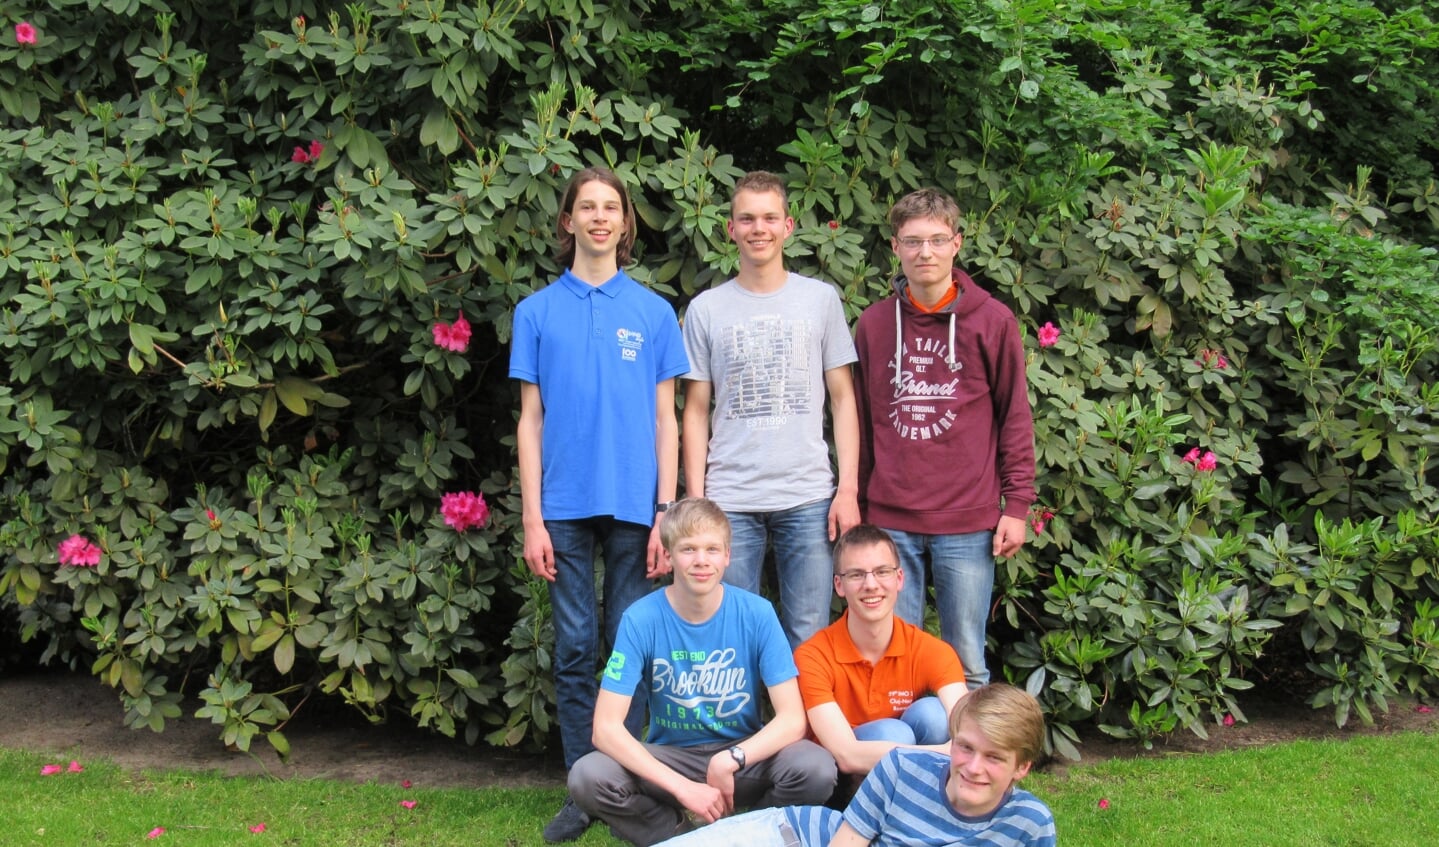 Het voltallige team dat Nederland gaat vertegenwoordigen op de Internationale Wiskunde Olympiade. Jippe staat rechts.